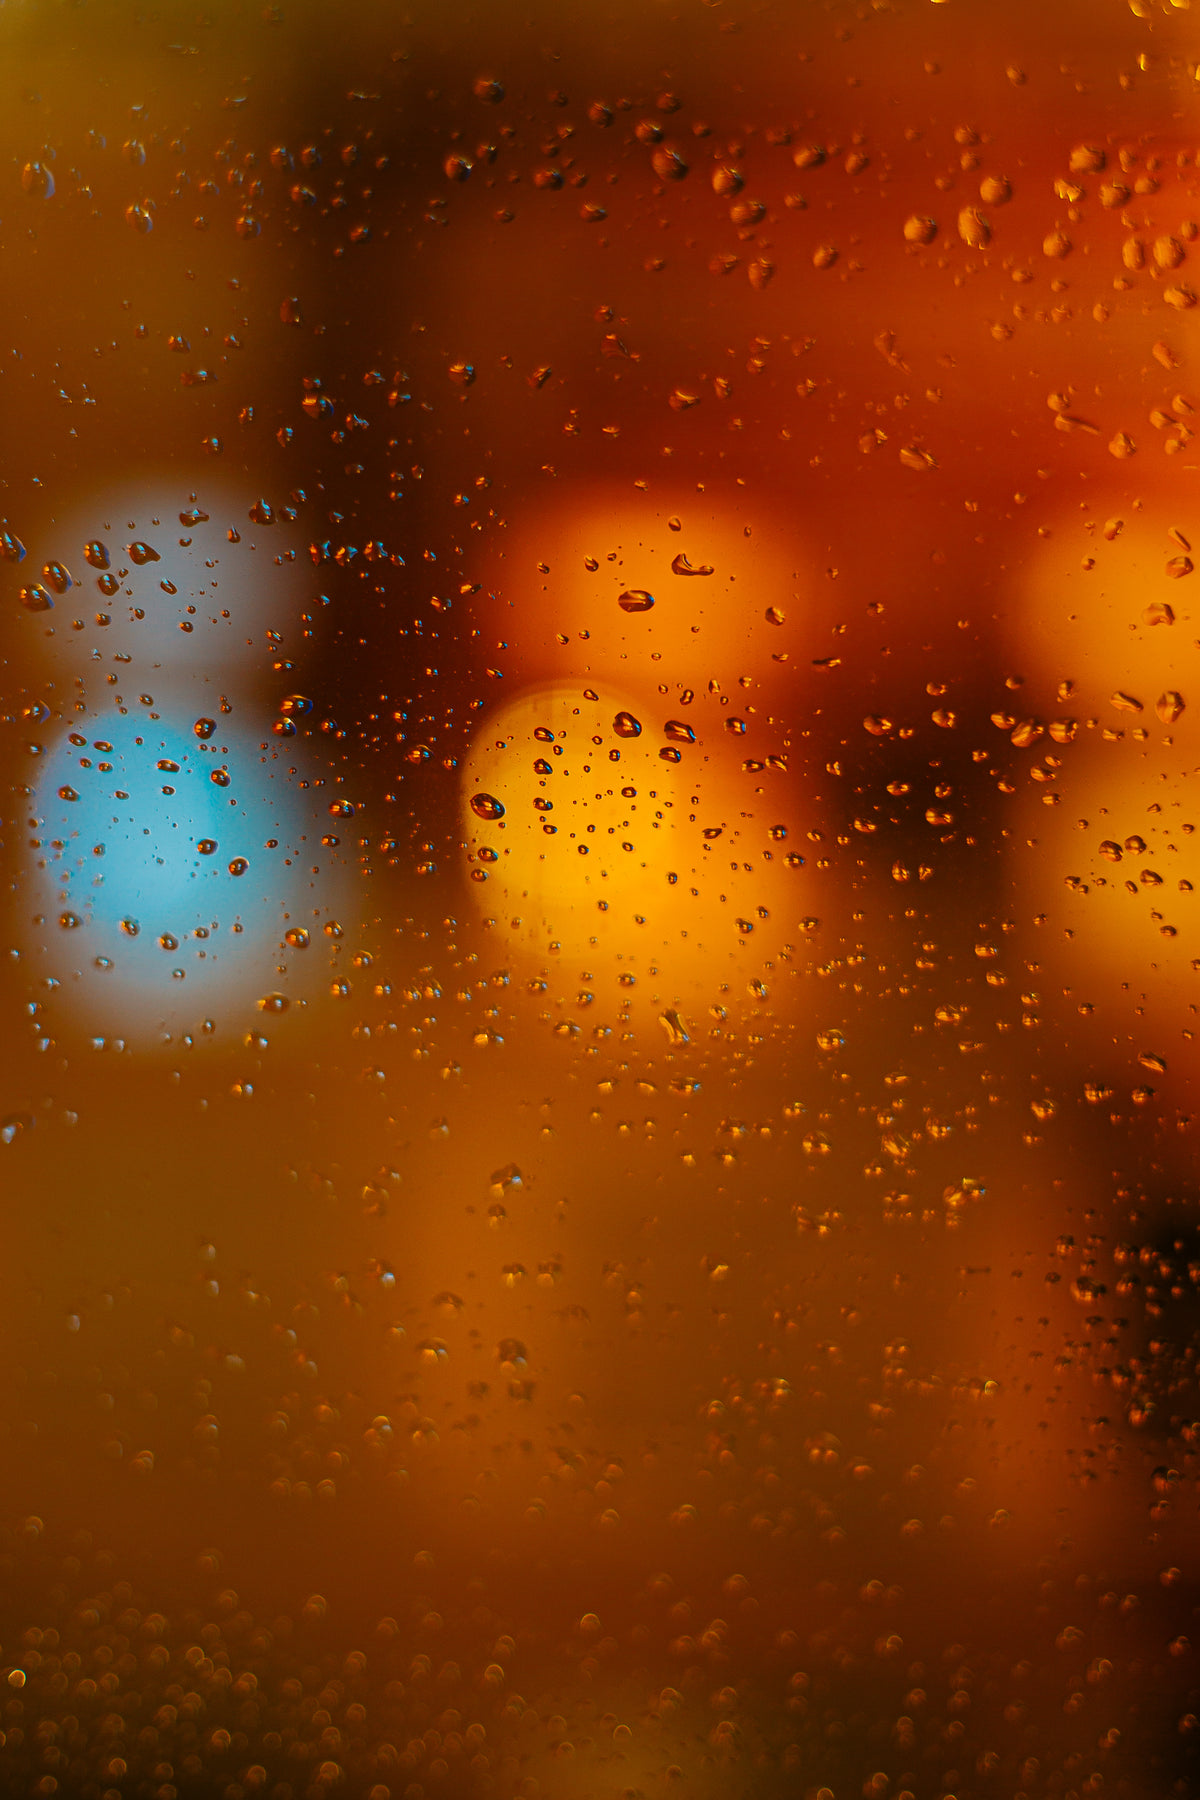 rain drops illuminated on window